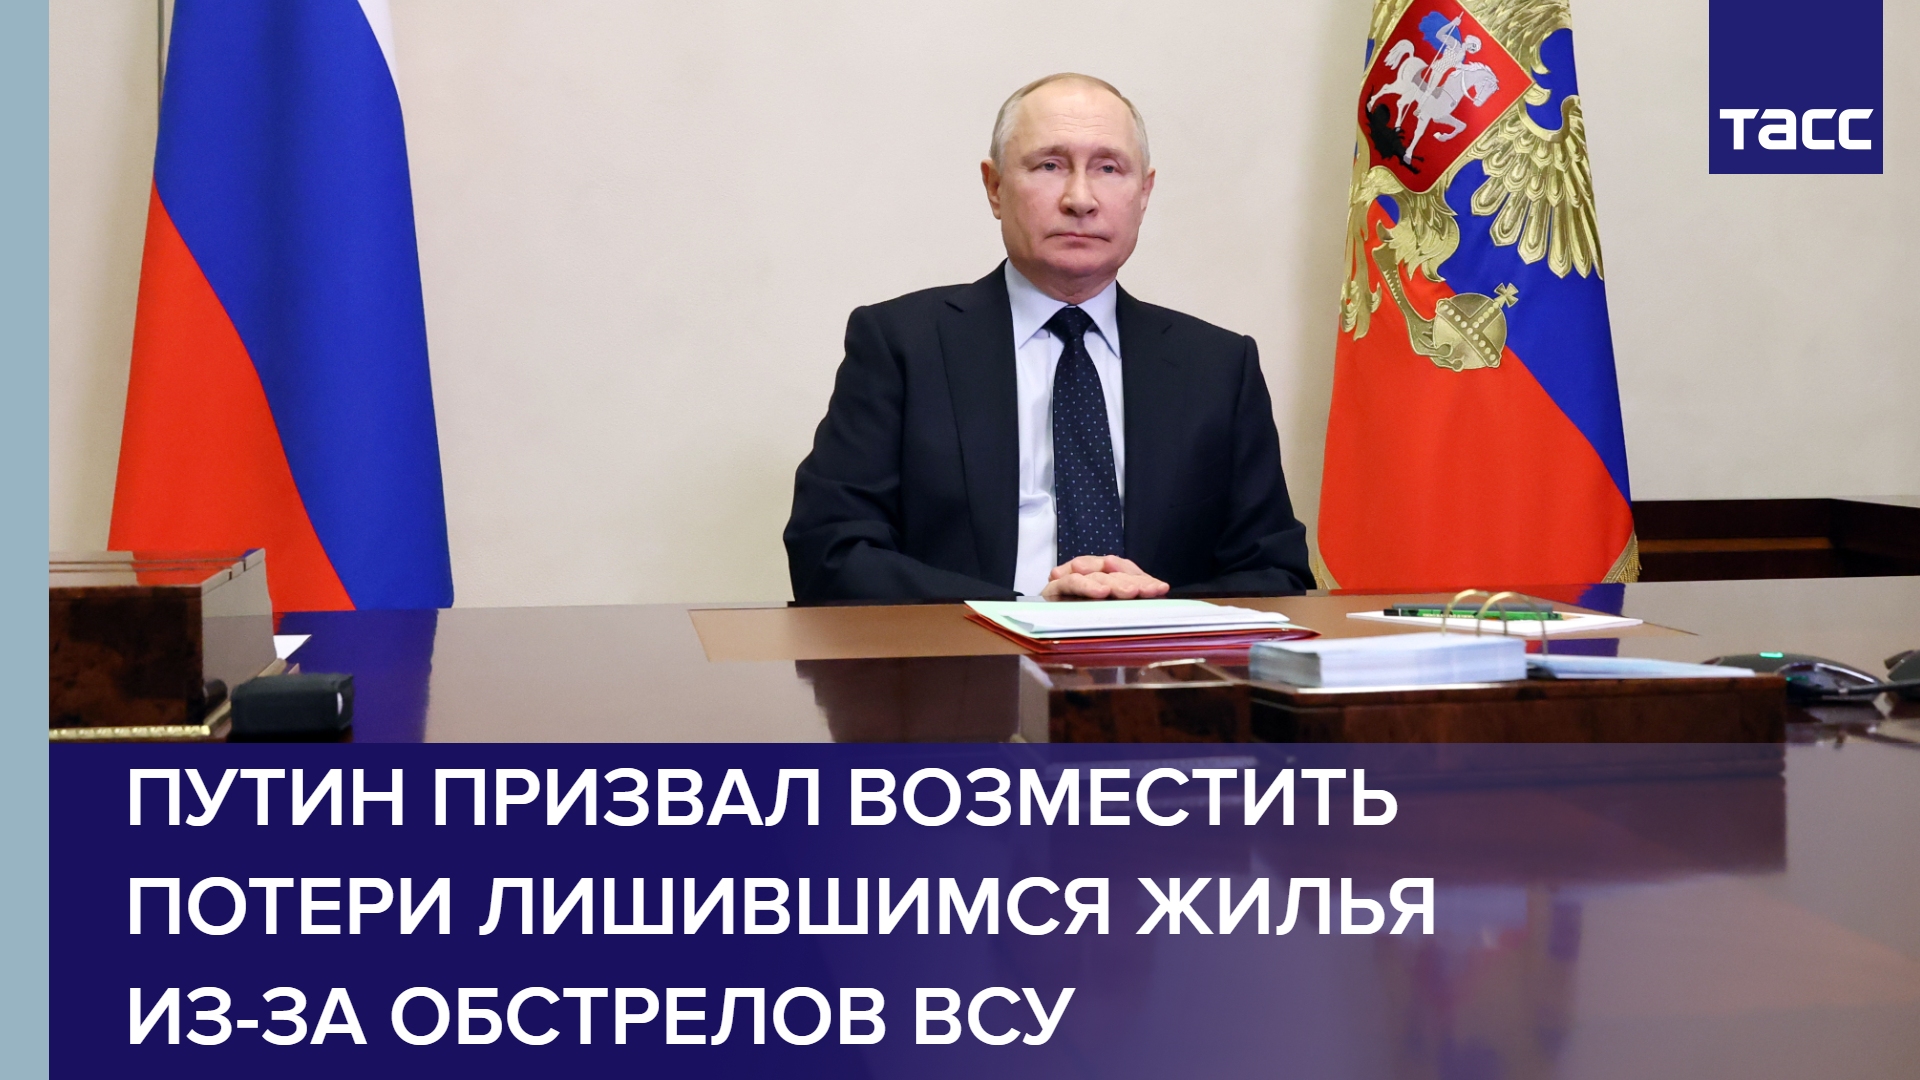 Путин призвал возместить потери лишившимся жилья из-за обстрелов ВСУ #shorts